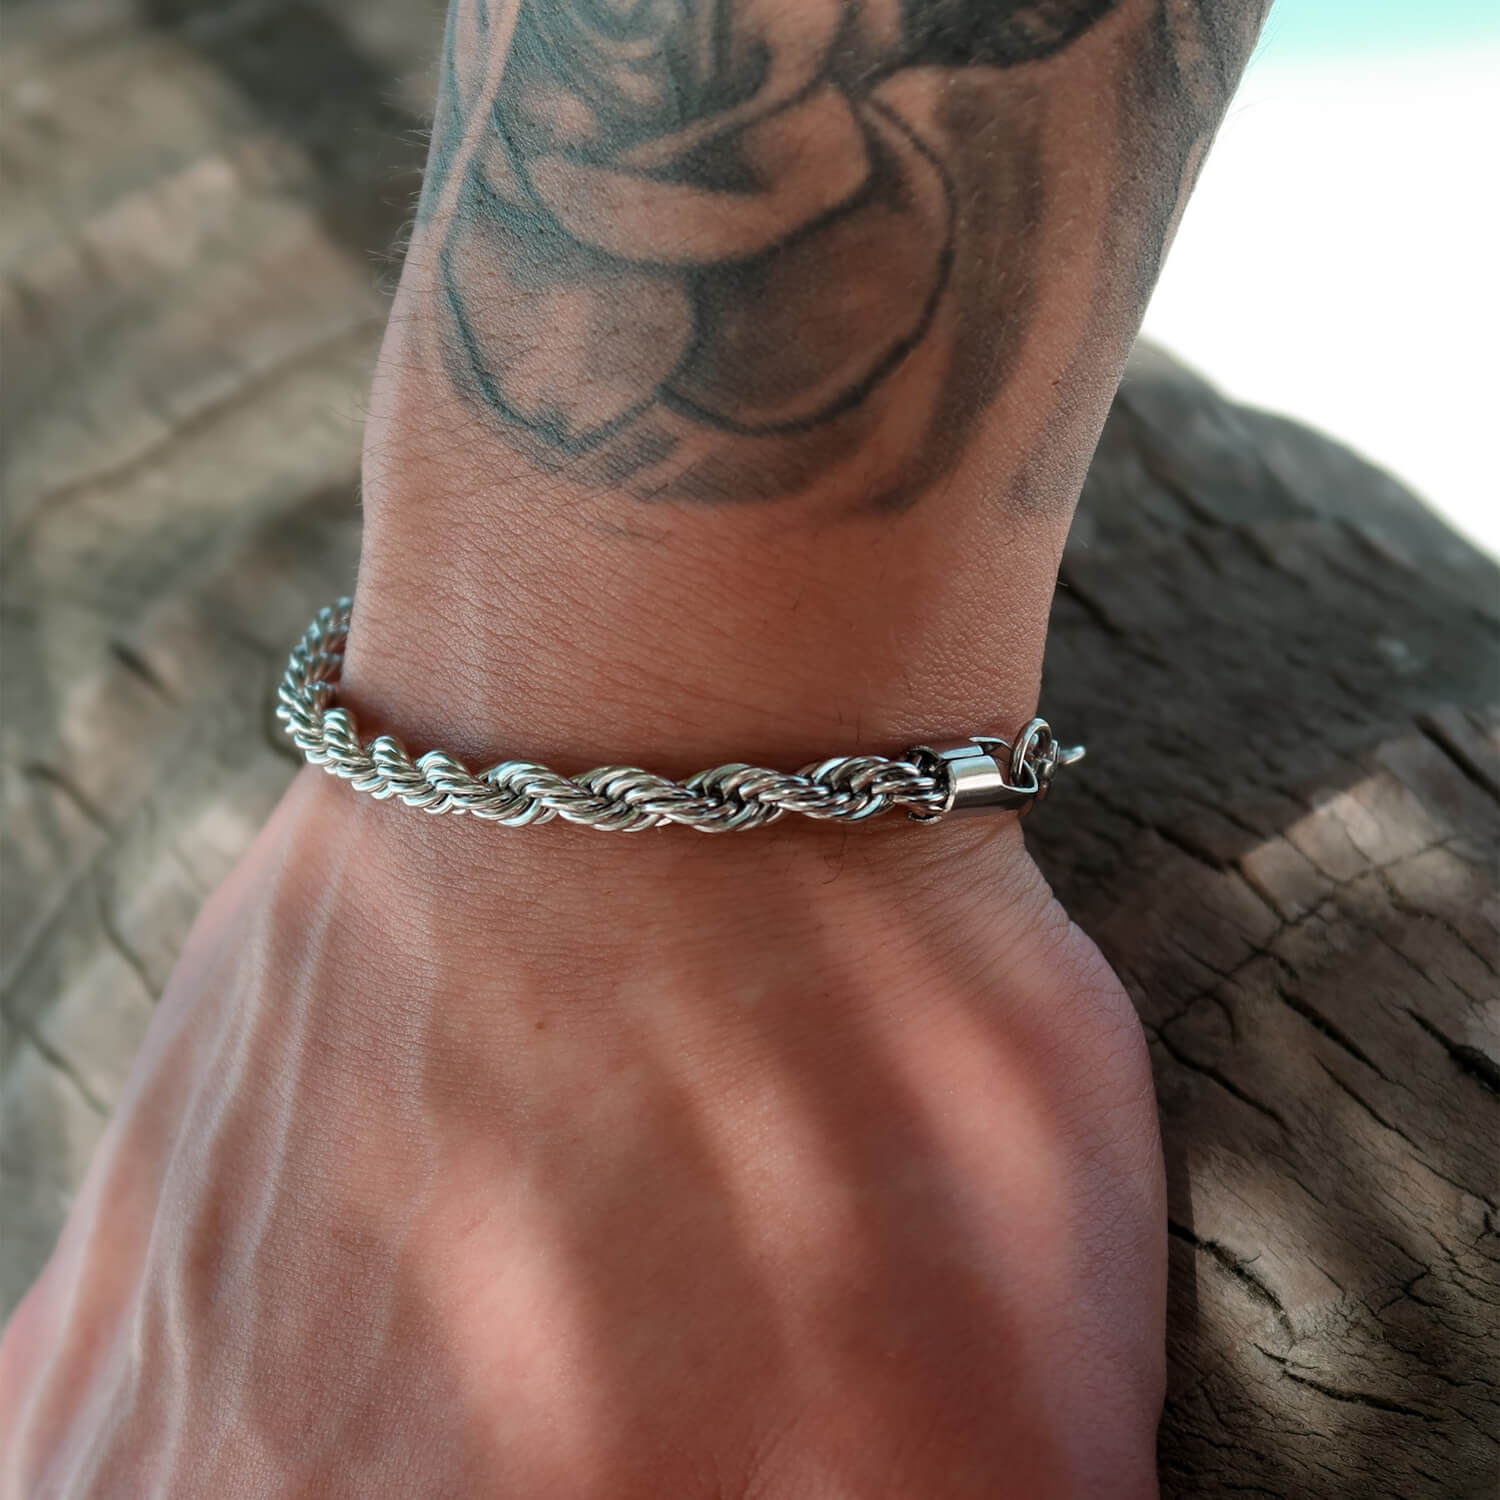 5mm silver rope bracelet on wrist